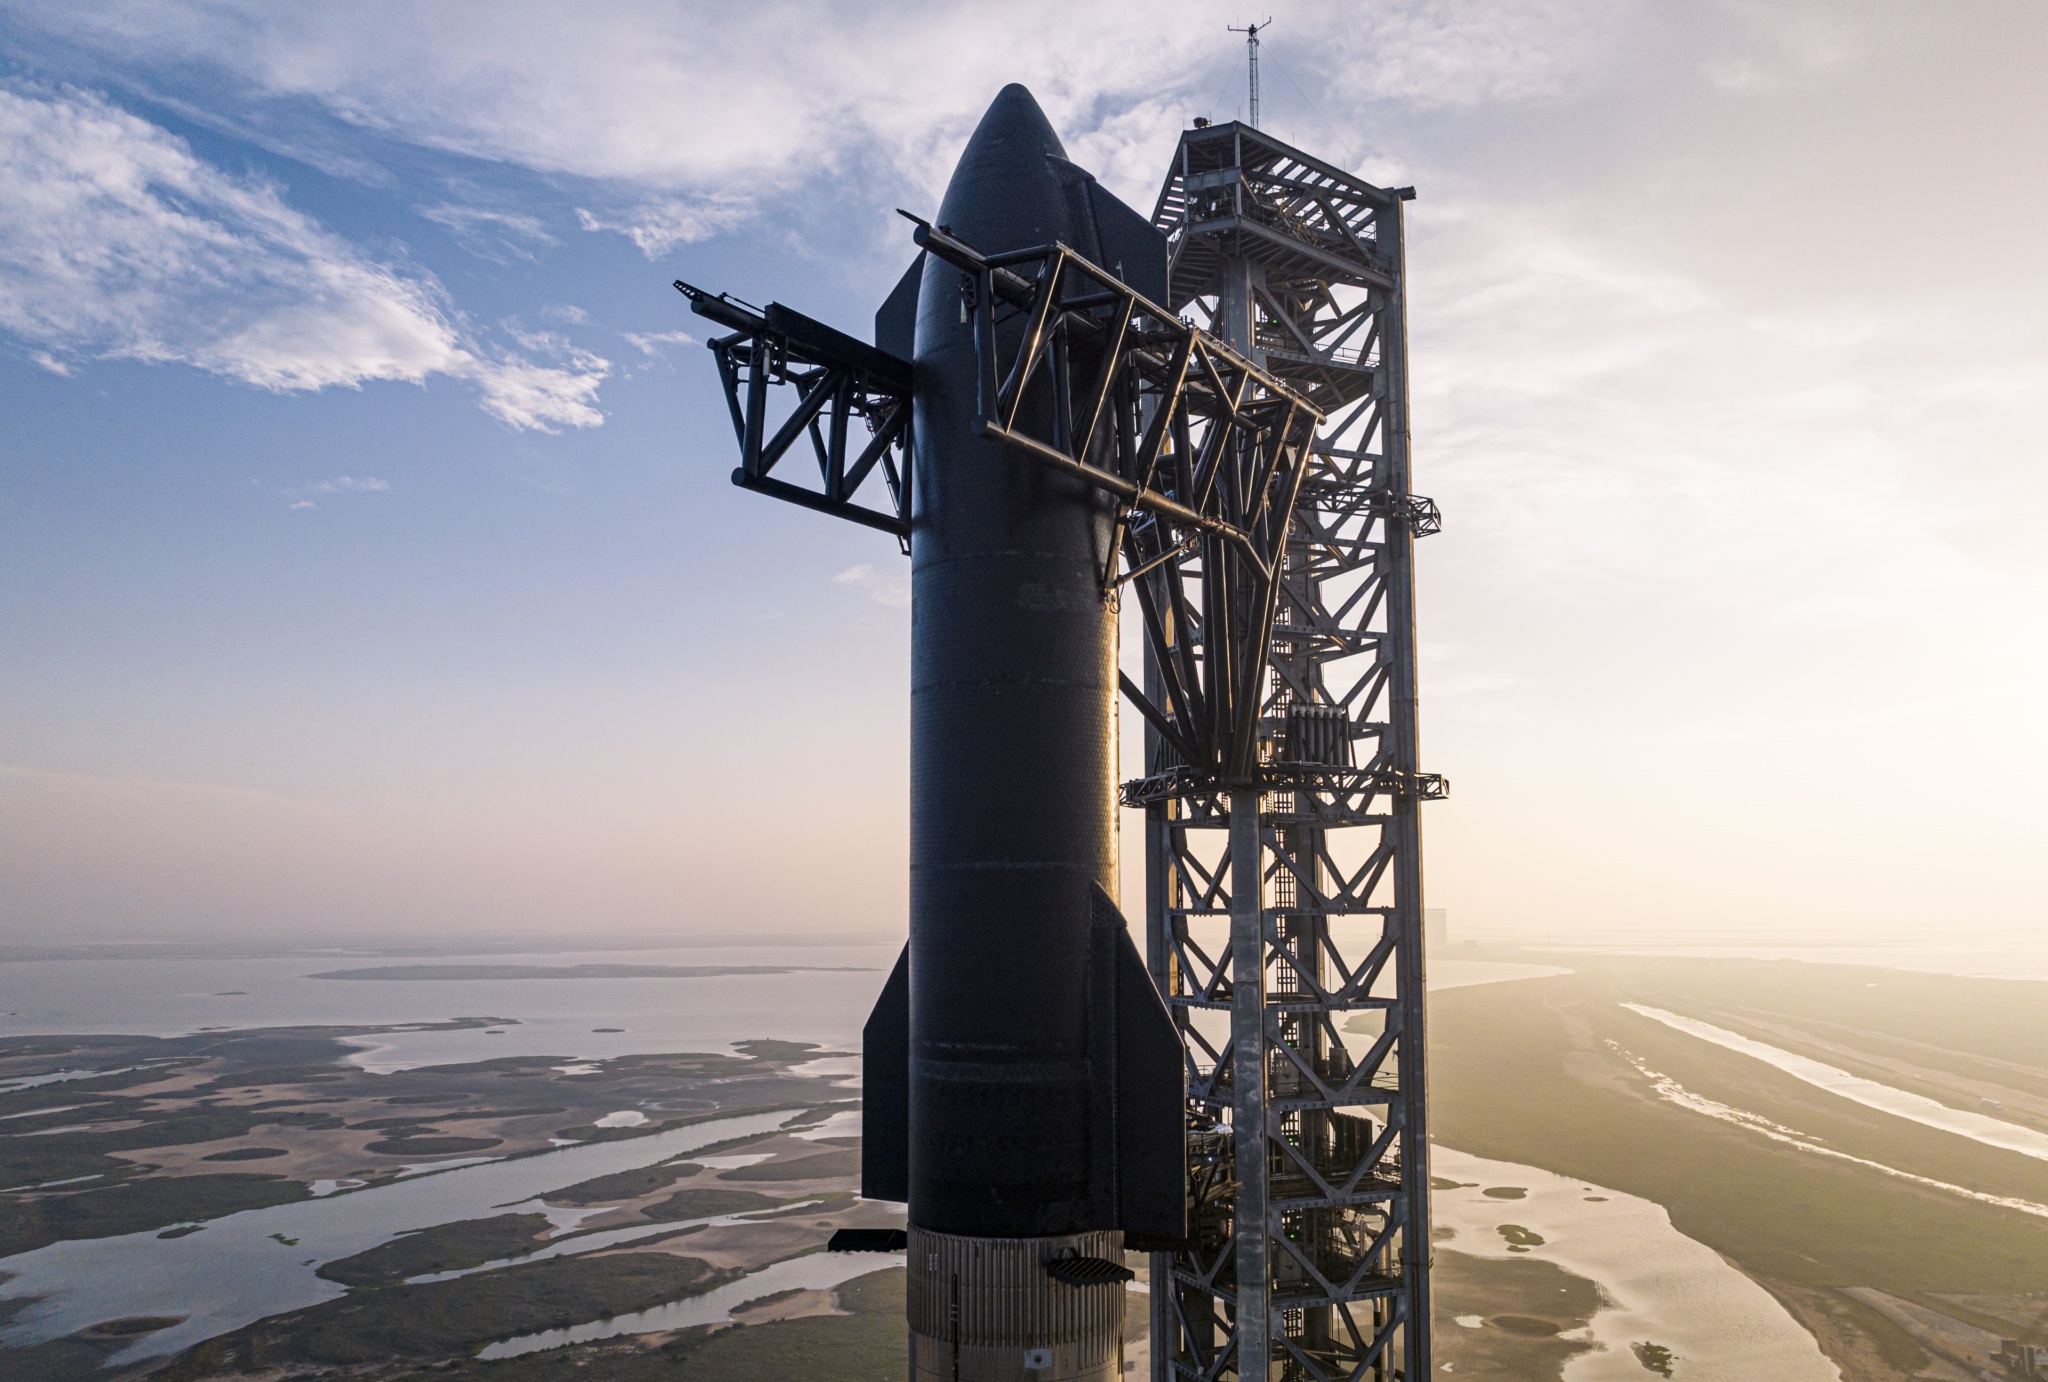 Нова МКС на базі Starship. NASA співпрацюватиме зі SpaceX, Blue Origin і ще 5 компаніями у розробці нових орбітальних станцій